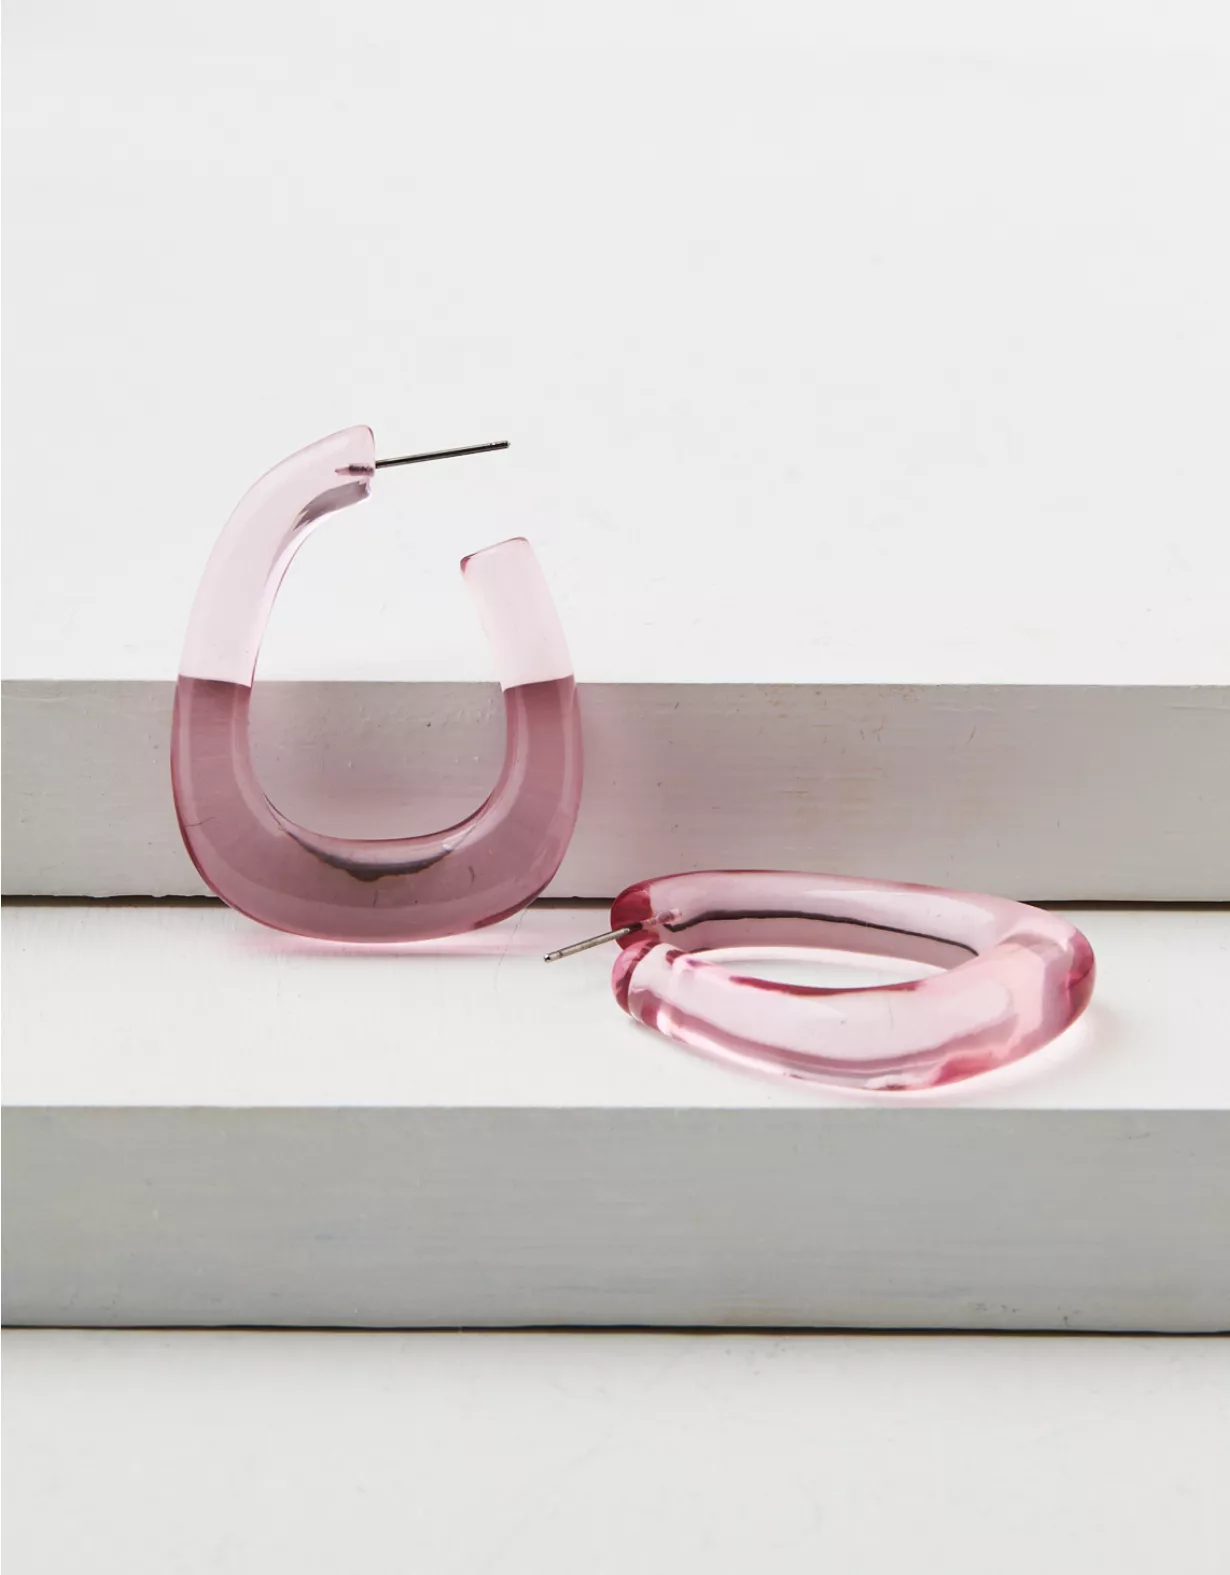 AEO Clear Pink Hoop Earring